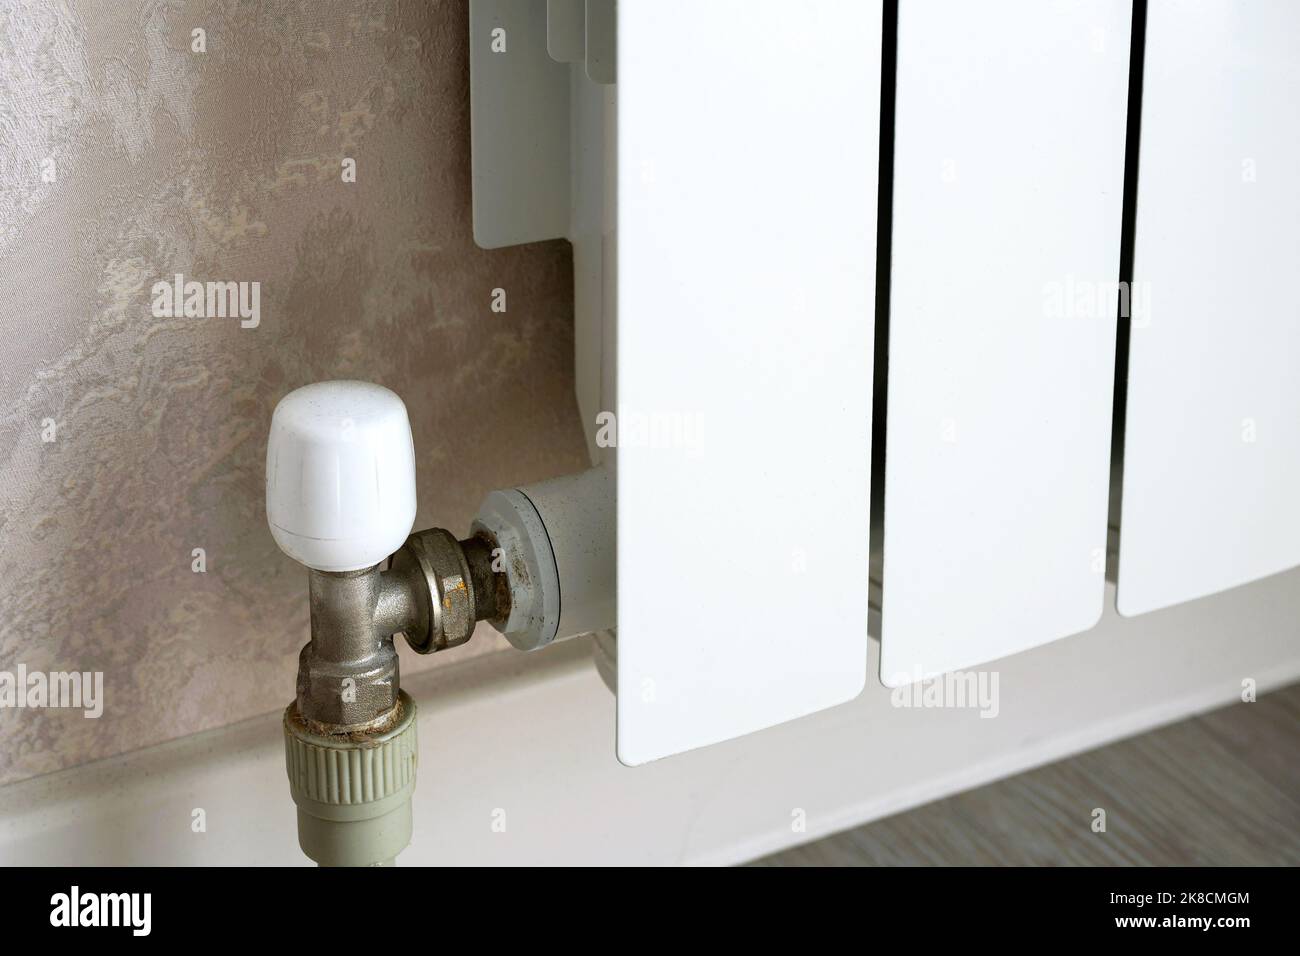 Radiatore di riscaldamento con termostato a parete, scaldabagno in metallo bianco in camera. Concetto di calore, crisi energetica, risparmio, radiatore contemporaneo Foto Stock